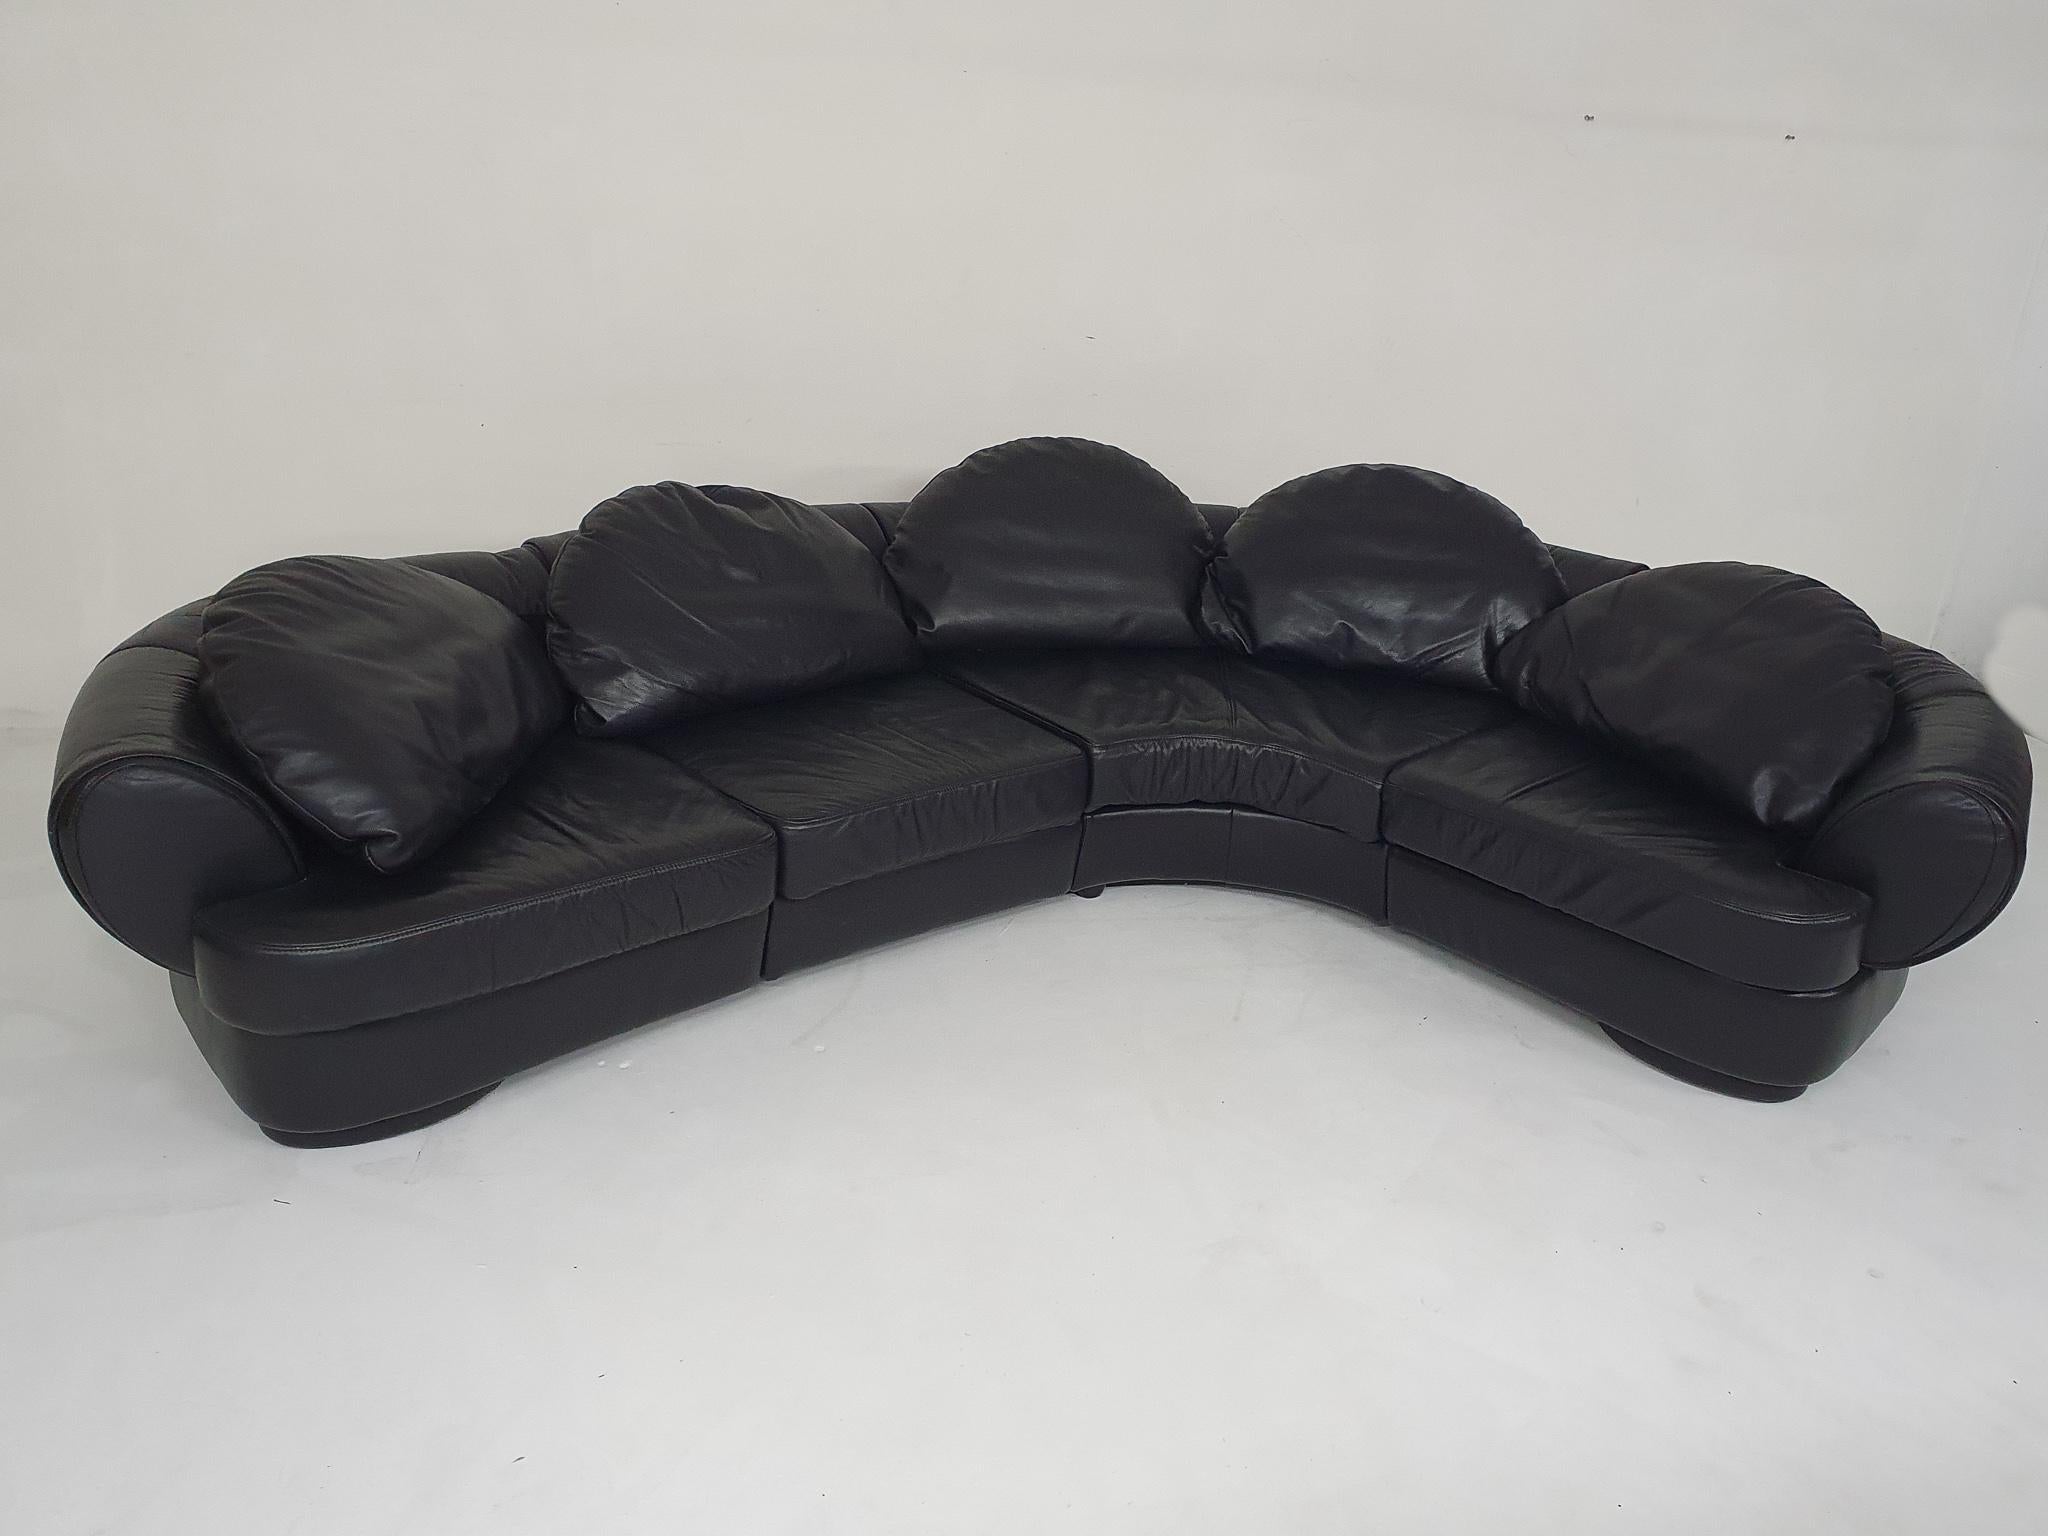 Canapé sectionnel en cuir noir d'origine de haute qualité. Le canapé date des années 80 mais est encore en bon état. Il se compose de 4 parties qui sont fixées l'une à l'autre par des broches métalliques. Les coussins de dos en forme de lune sont